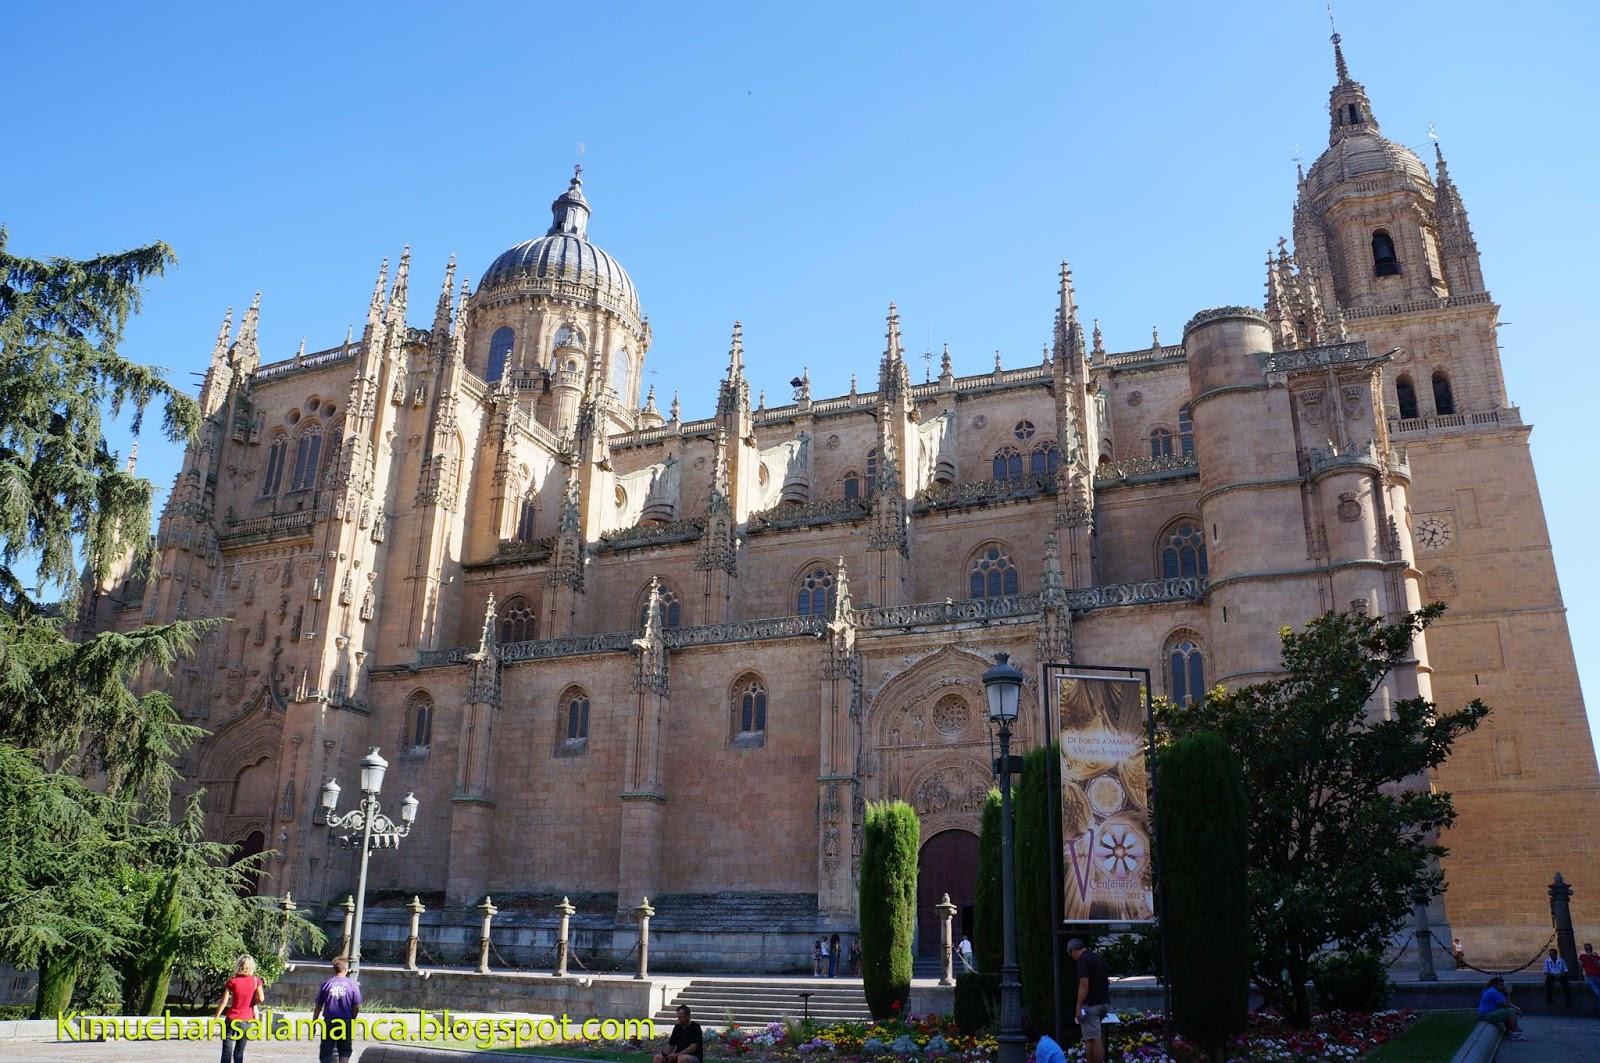 Entrada Catedral Nueva en Salamanca/サラマンカのカテドラル有料化